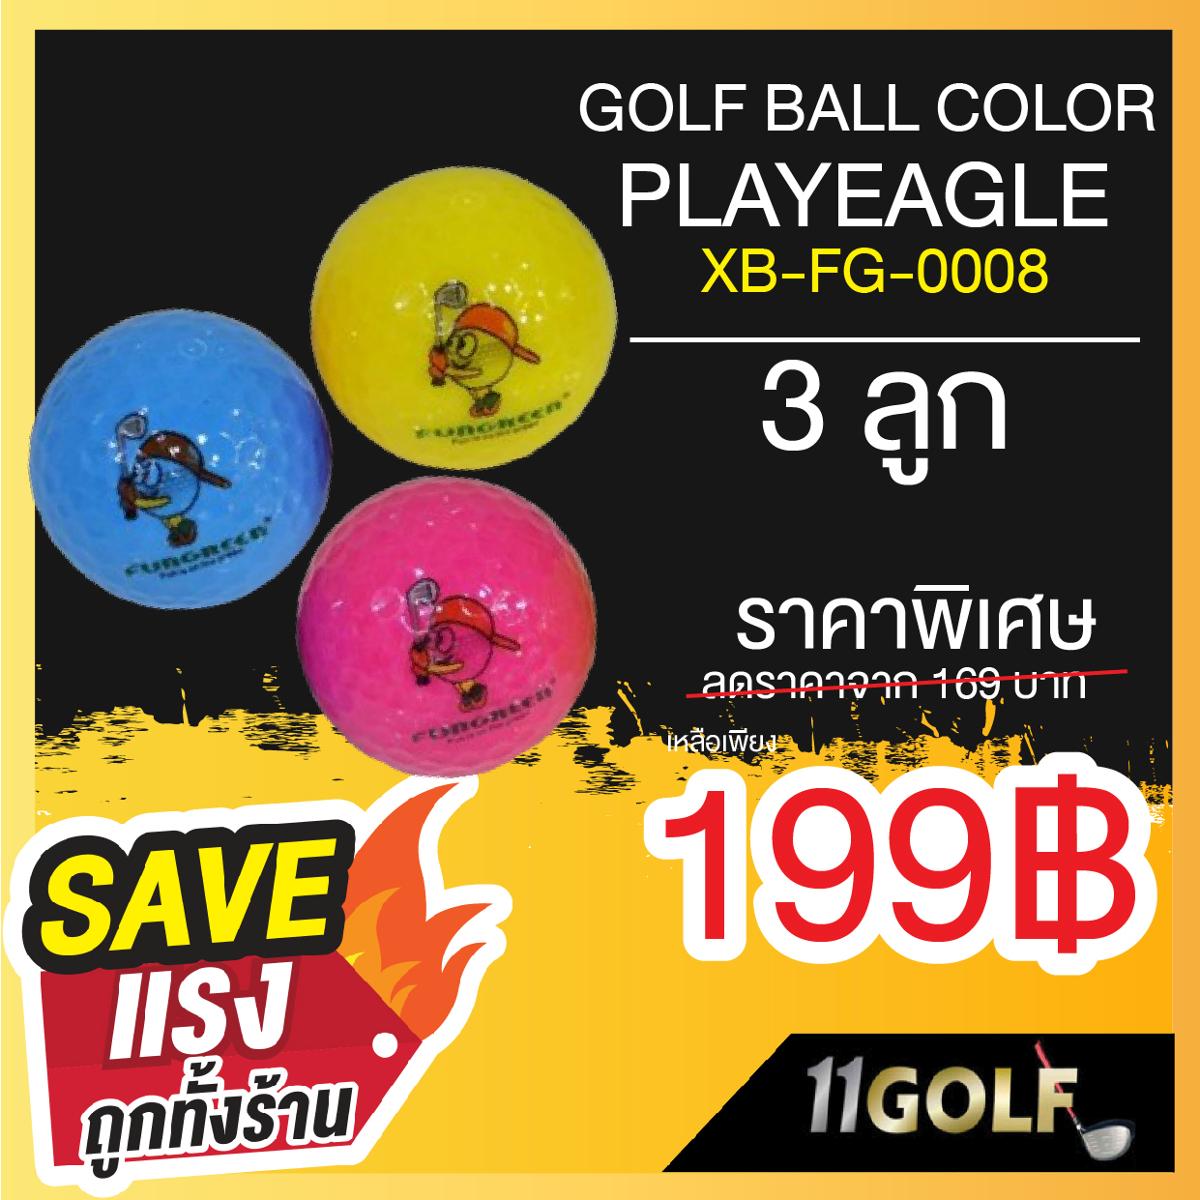 11GOLF PLAYEAGLE XB-FG-0008 GOLF BALL COLOR PLAYEAGLE ลูกกอล์ฟถูกออกแบบให้สร้างสปินได้ต่ำที่สุด เพื่อให้นักกอล์ฟตีได้ จัดส่งฟรีทั่วประเทศ